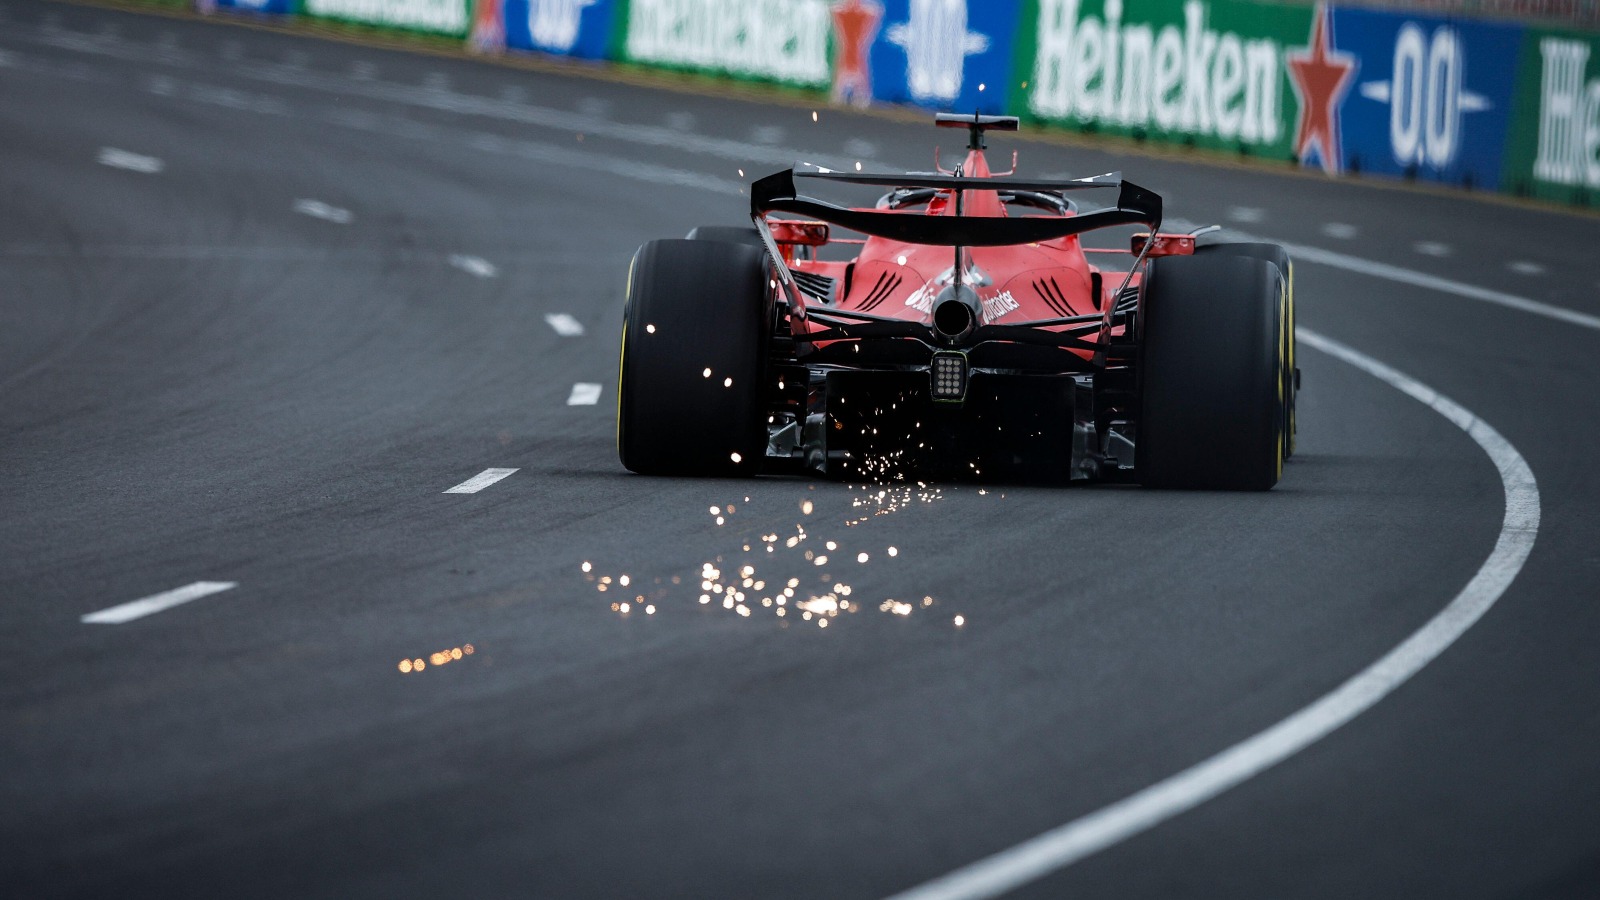 La FIA proporciona una actualización importante sobre el futuro del DRS a medida que se acerca la fecha límite para las nuevas reglas de la F1: PlanetF1